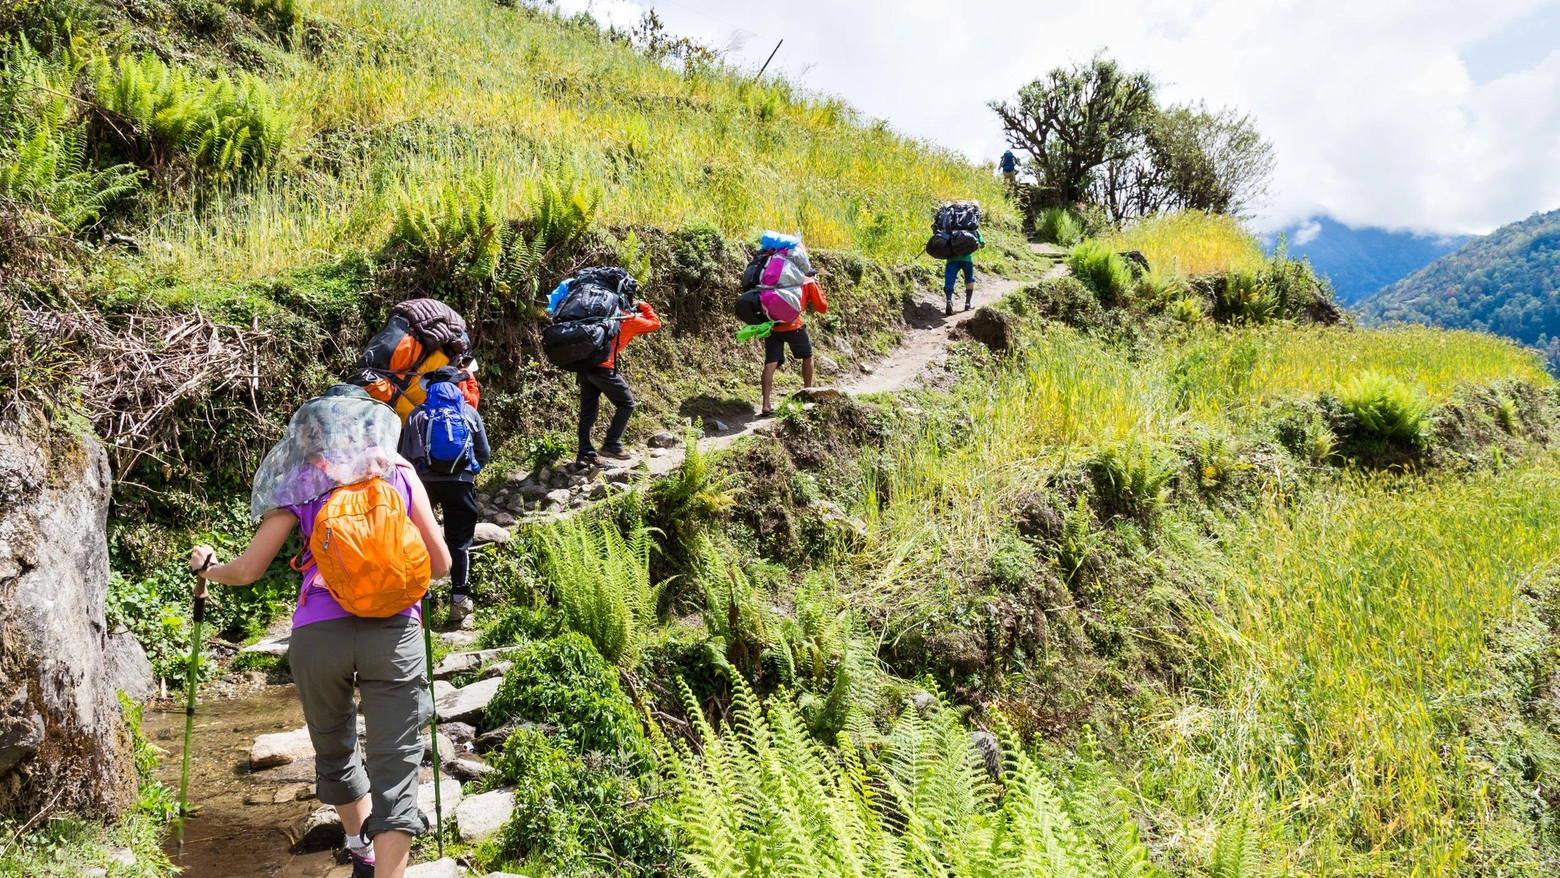 Il percorso unirà trekking e didattica: un cammino facile e adatto a tutti di 7 chilometri